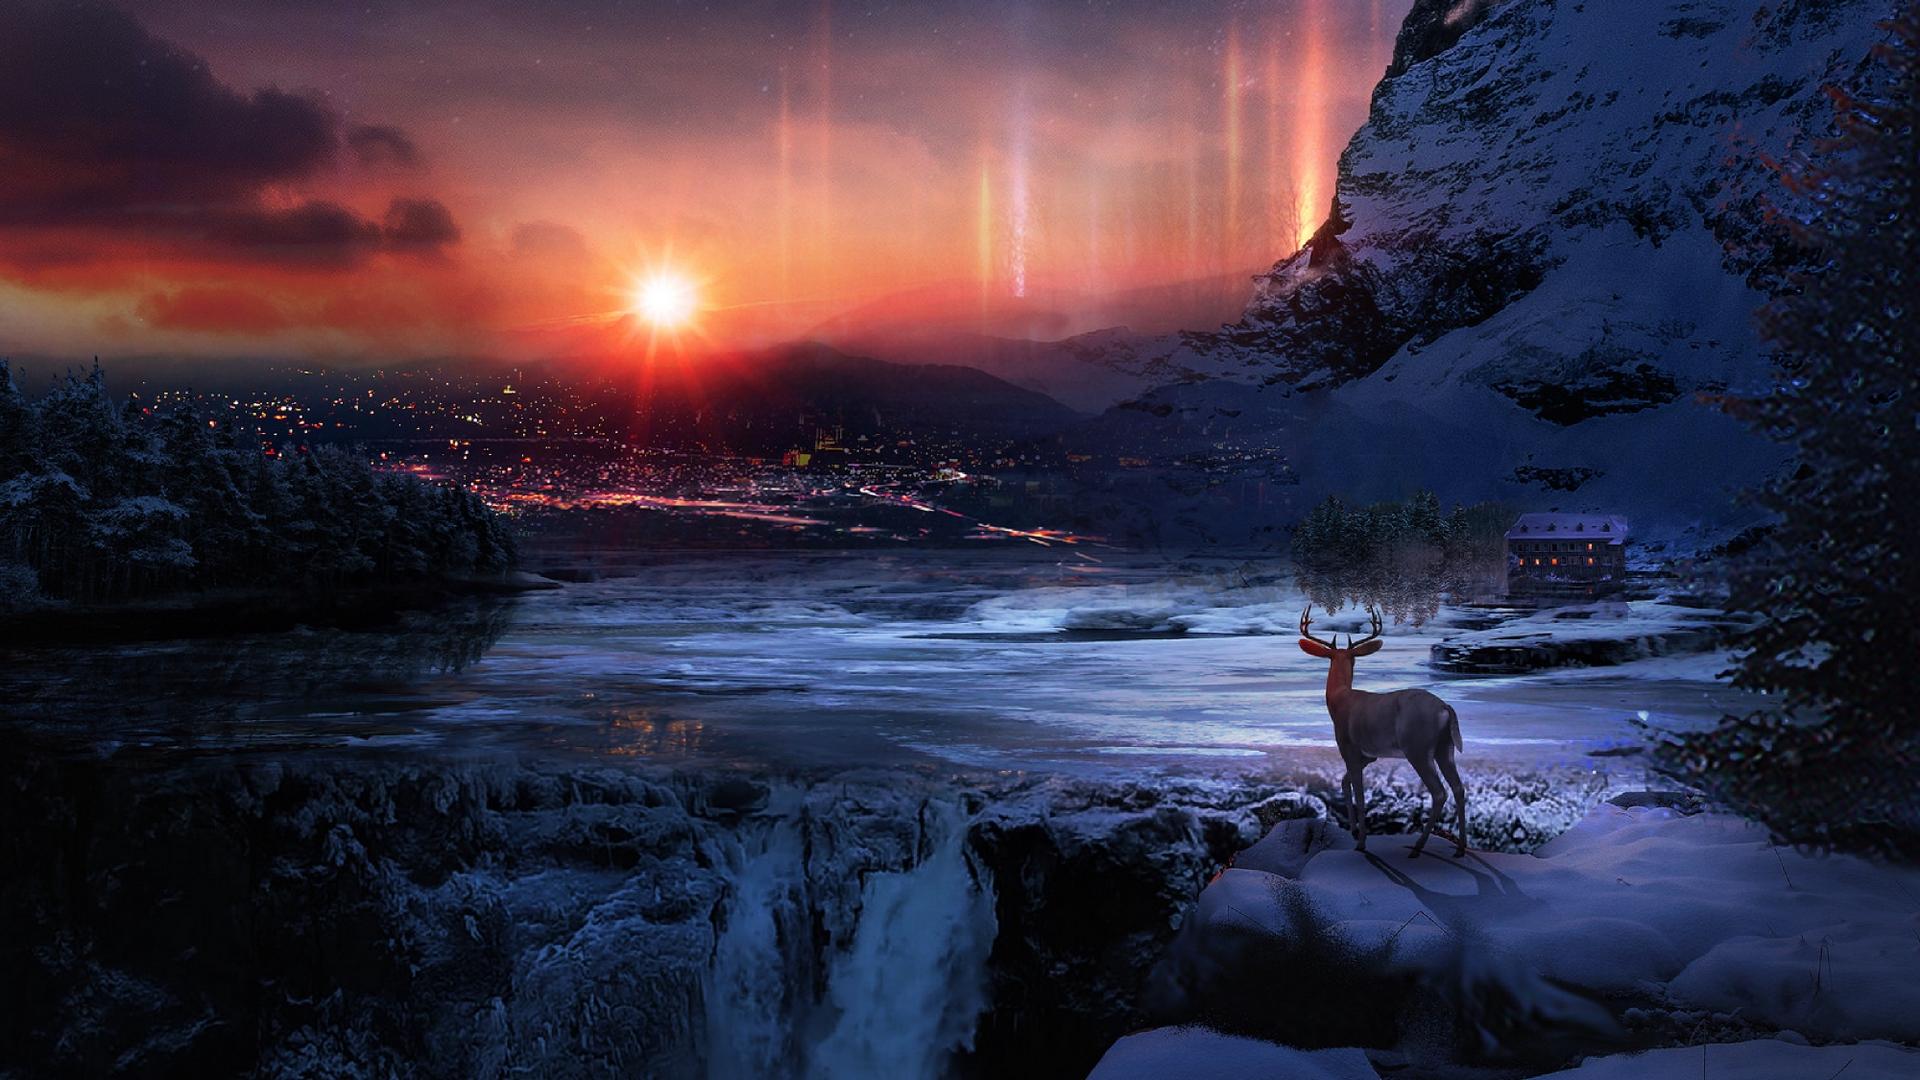 Download wallpaper 1920x1080 deer, winter, night, art, snow